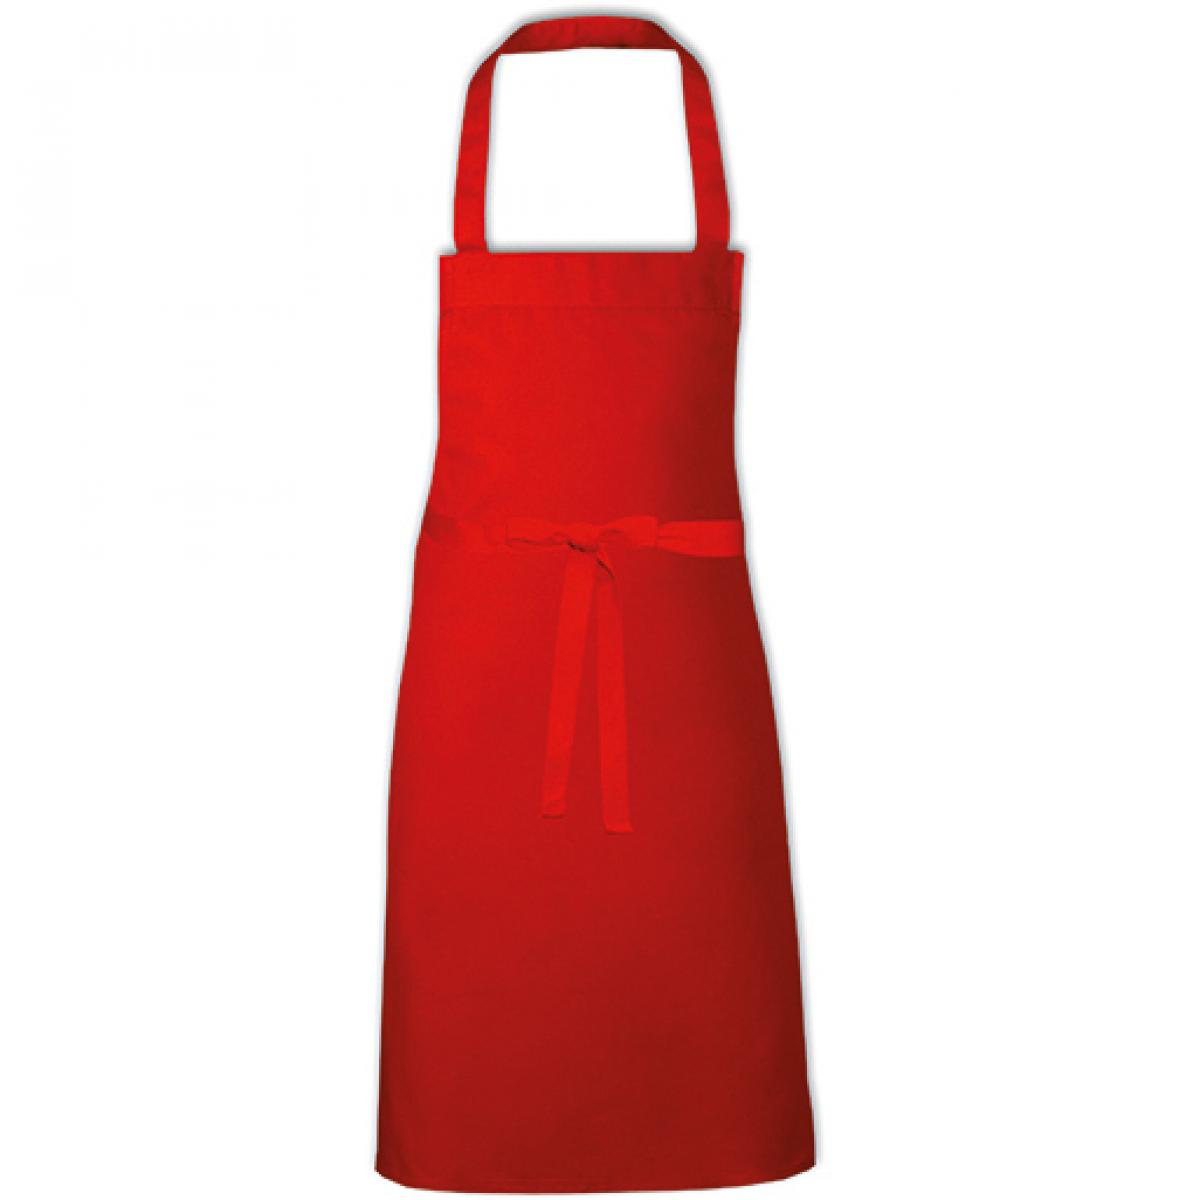 Hersteller: Link Kitchen Wear Herstellernummer: BBQ8073 Artikelbezeichnung: Barbecue Apron - 73 x 80 cm - Waschbar bis 60 °C Farbe: Red